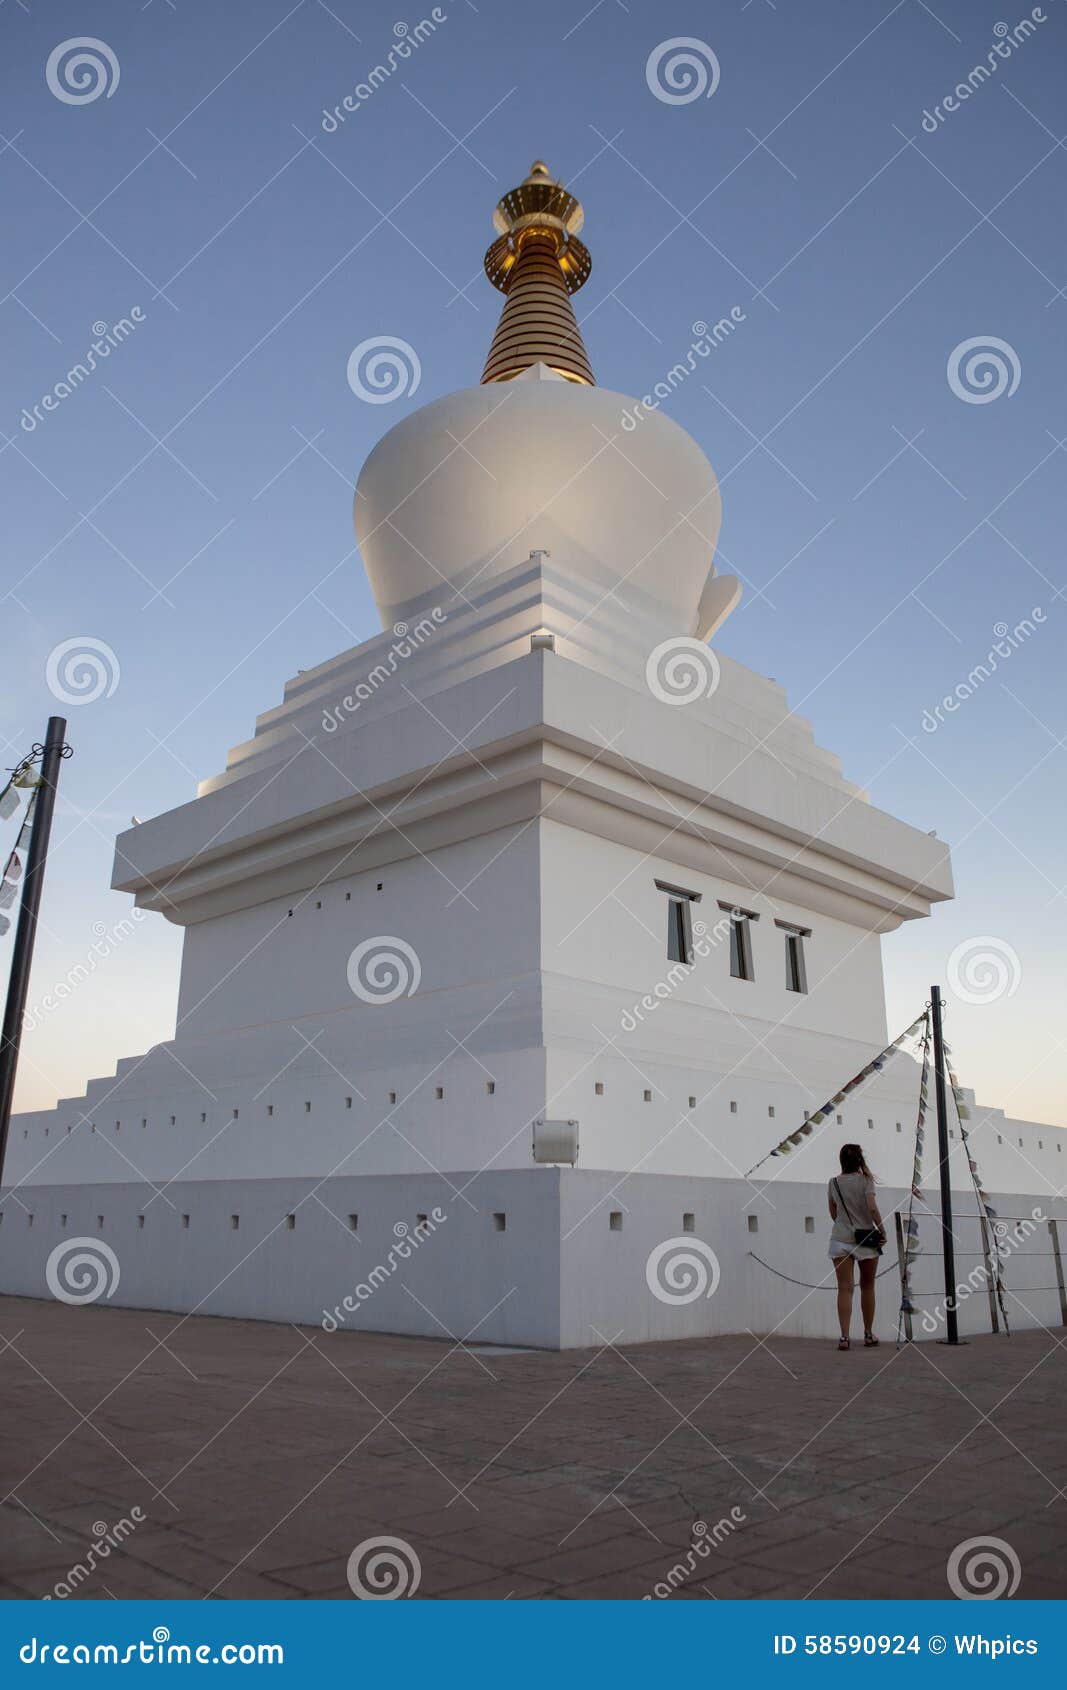 benalmadena estupa tower at dusk